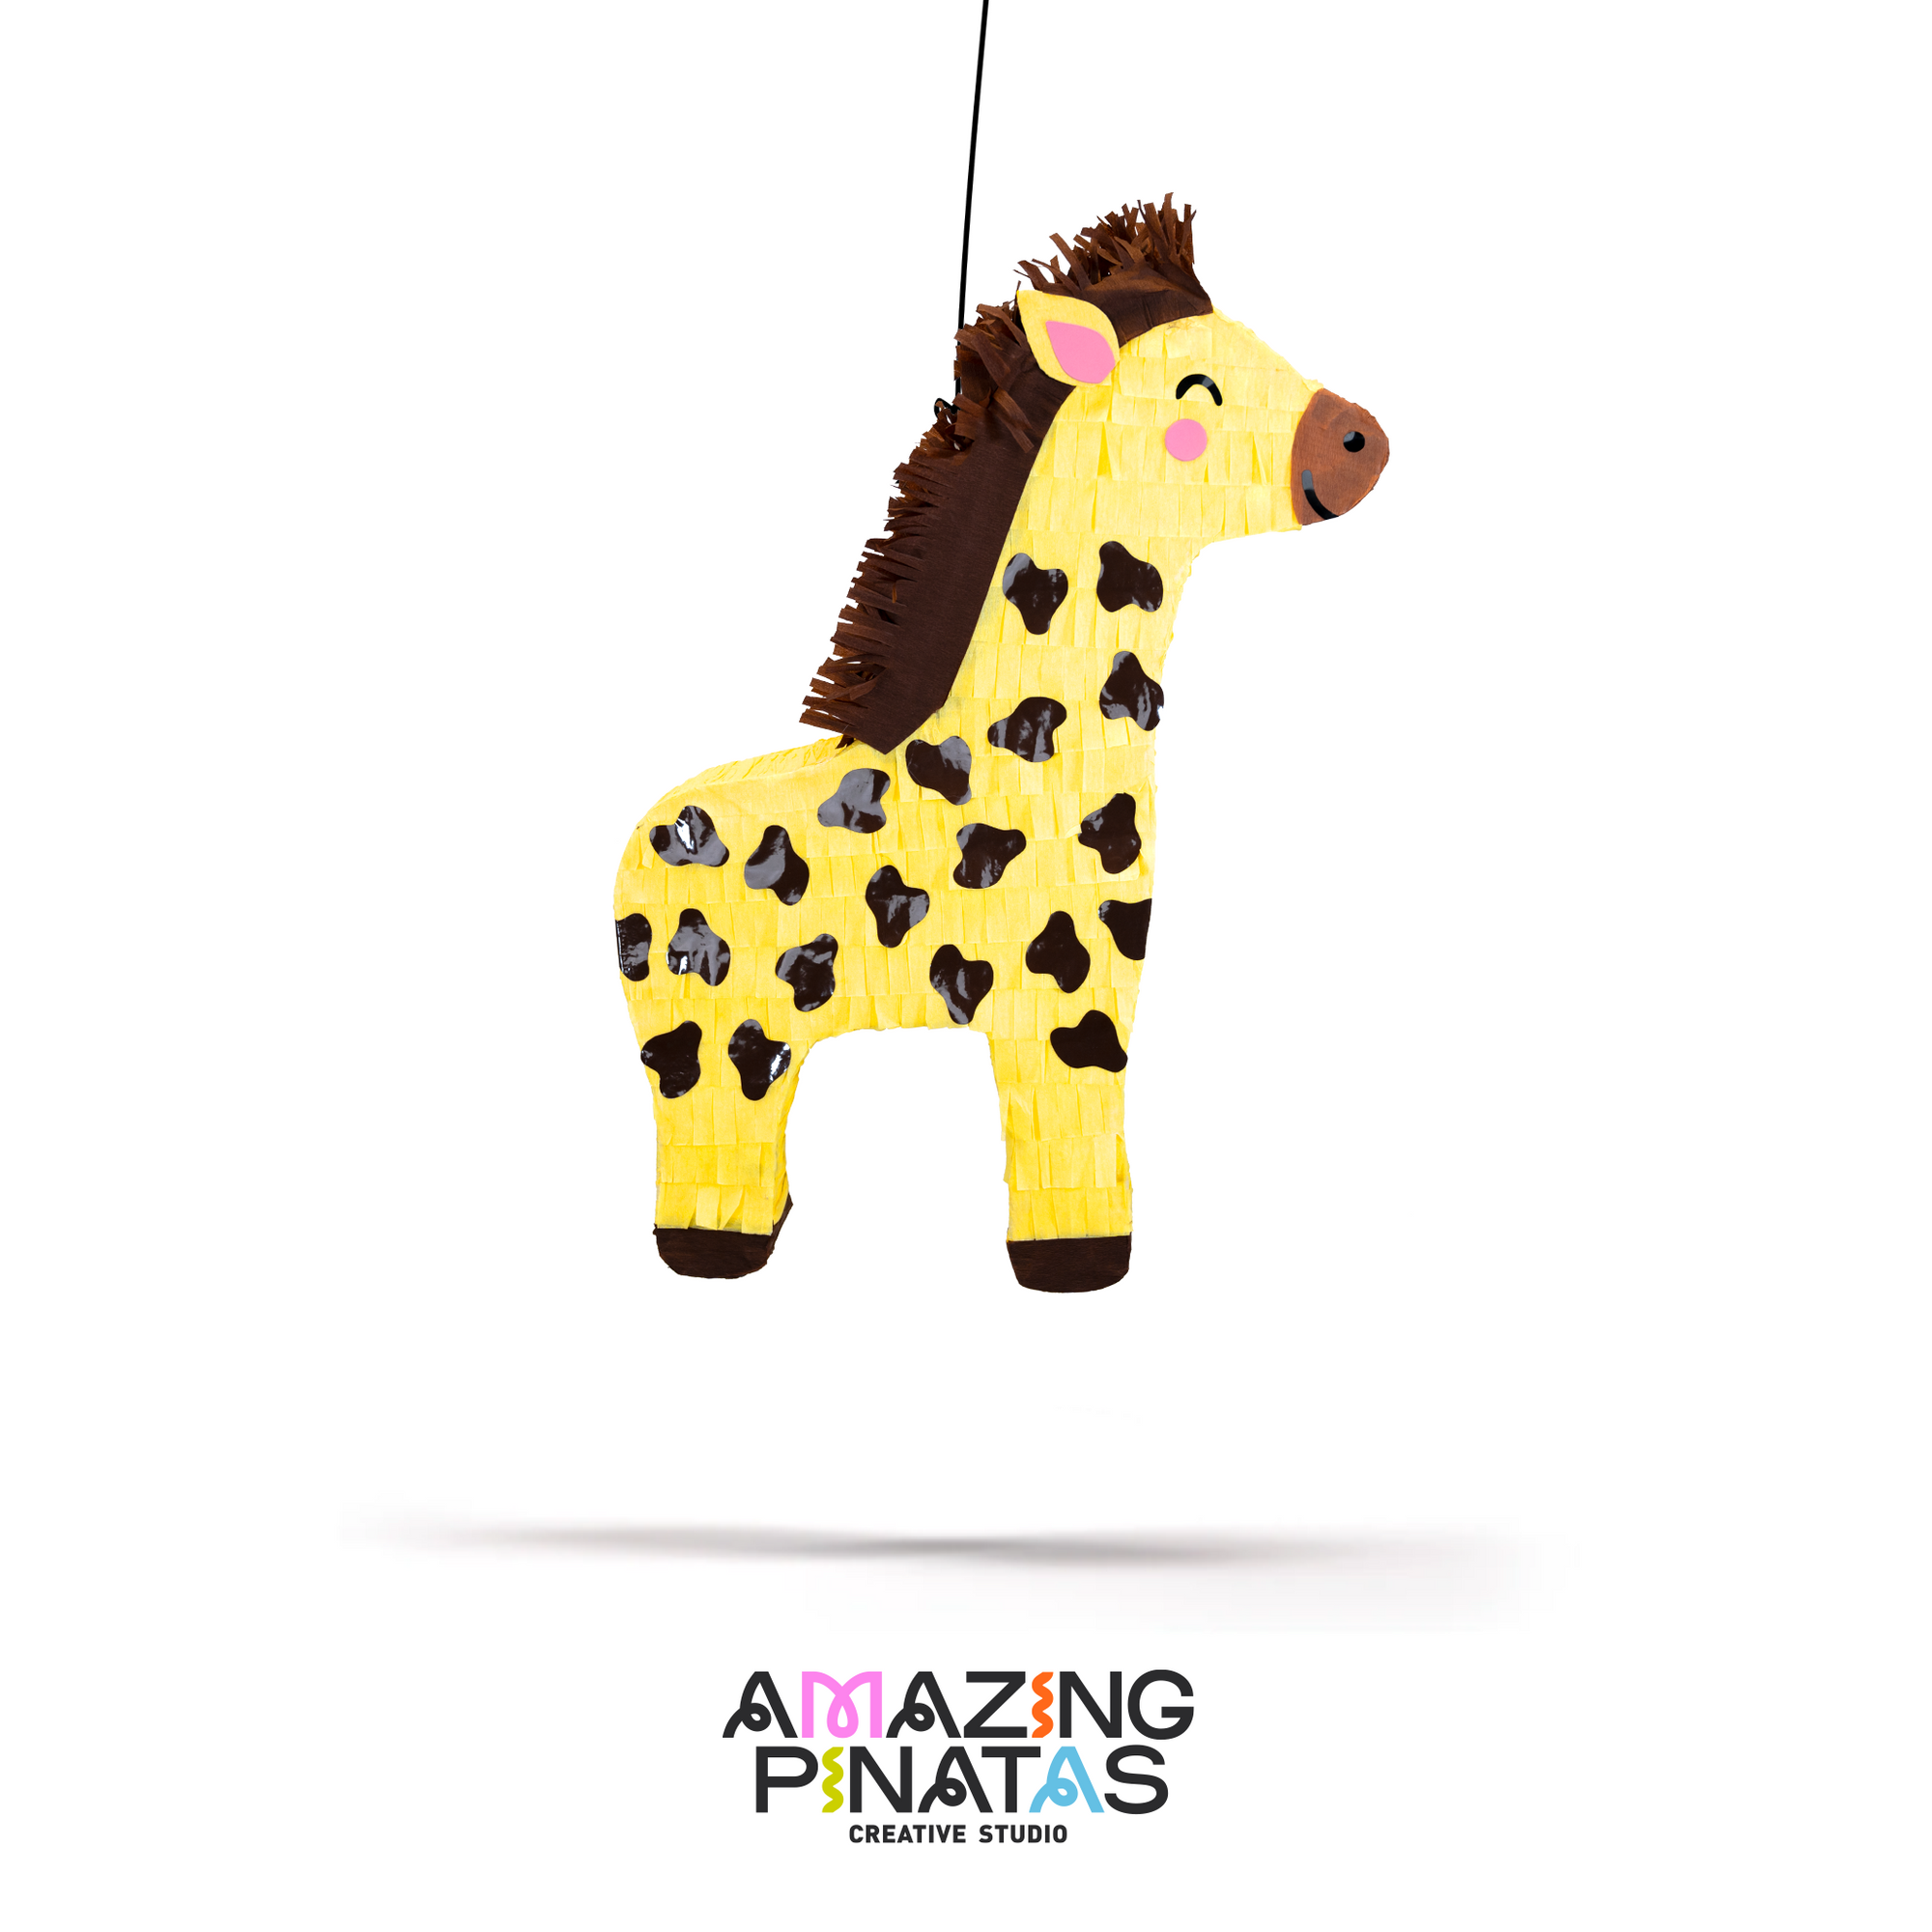 Giraffe Pinata | Amazing Pinatas 